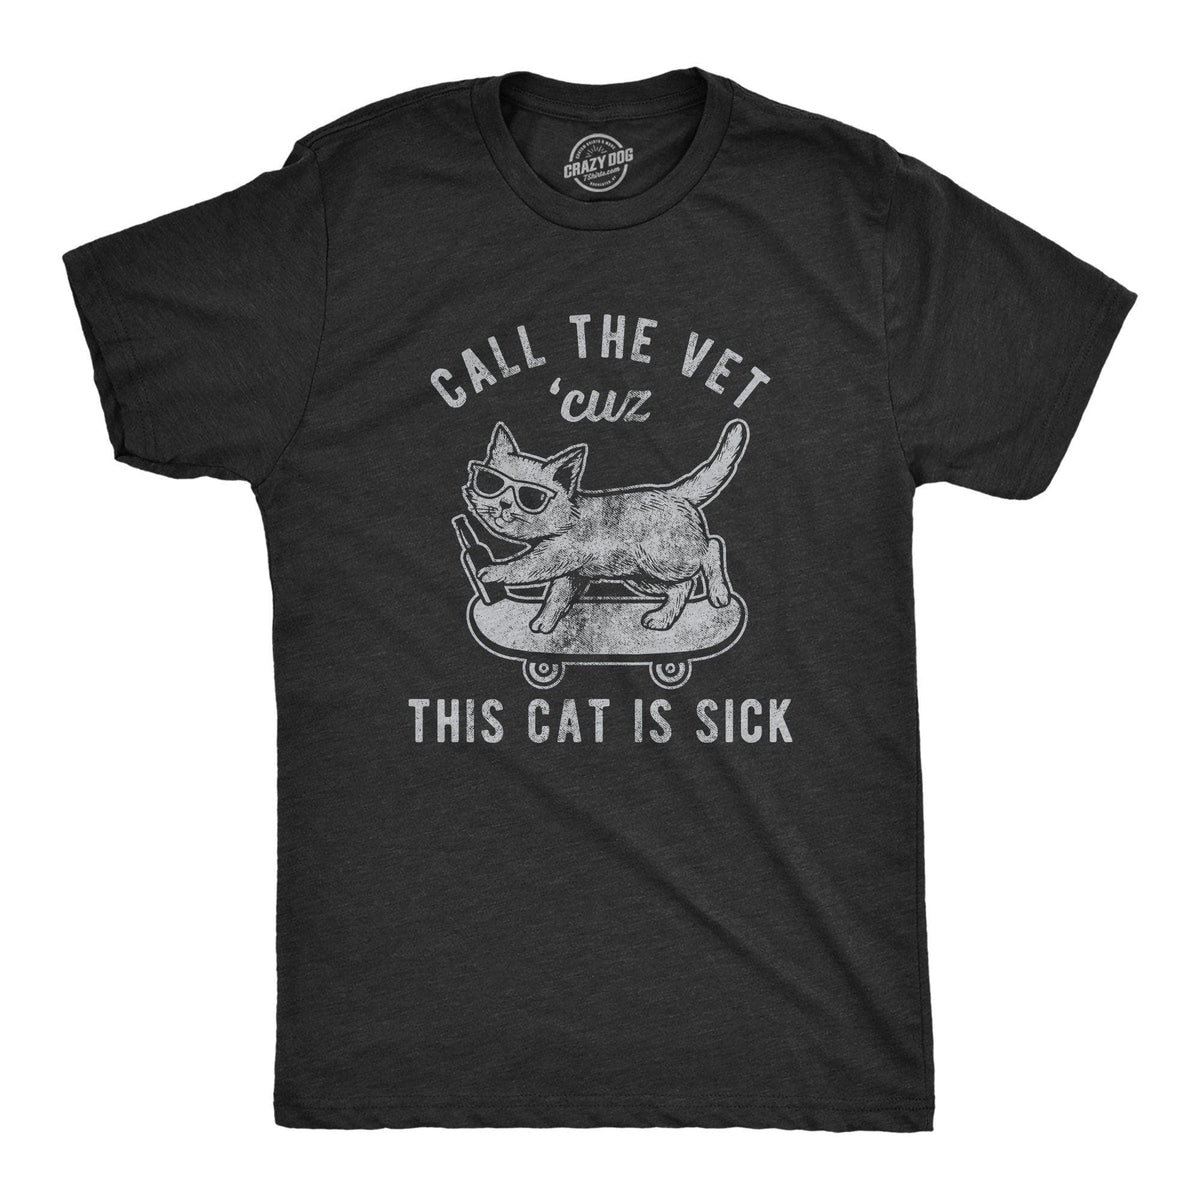 Call The Vet Cuz This Cat Is Sick Men&#39;s Tshirt - Crazy Dog T-Shirts